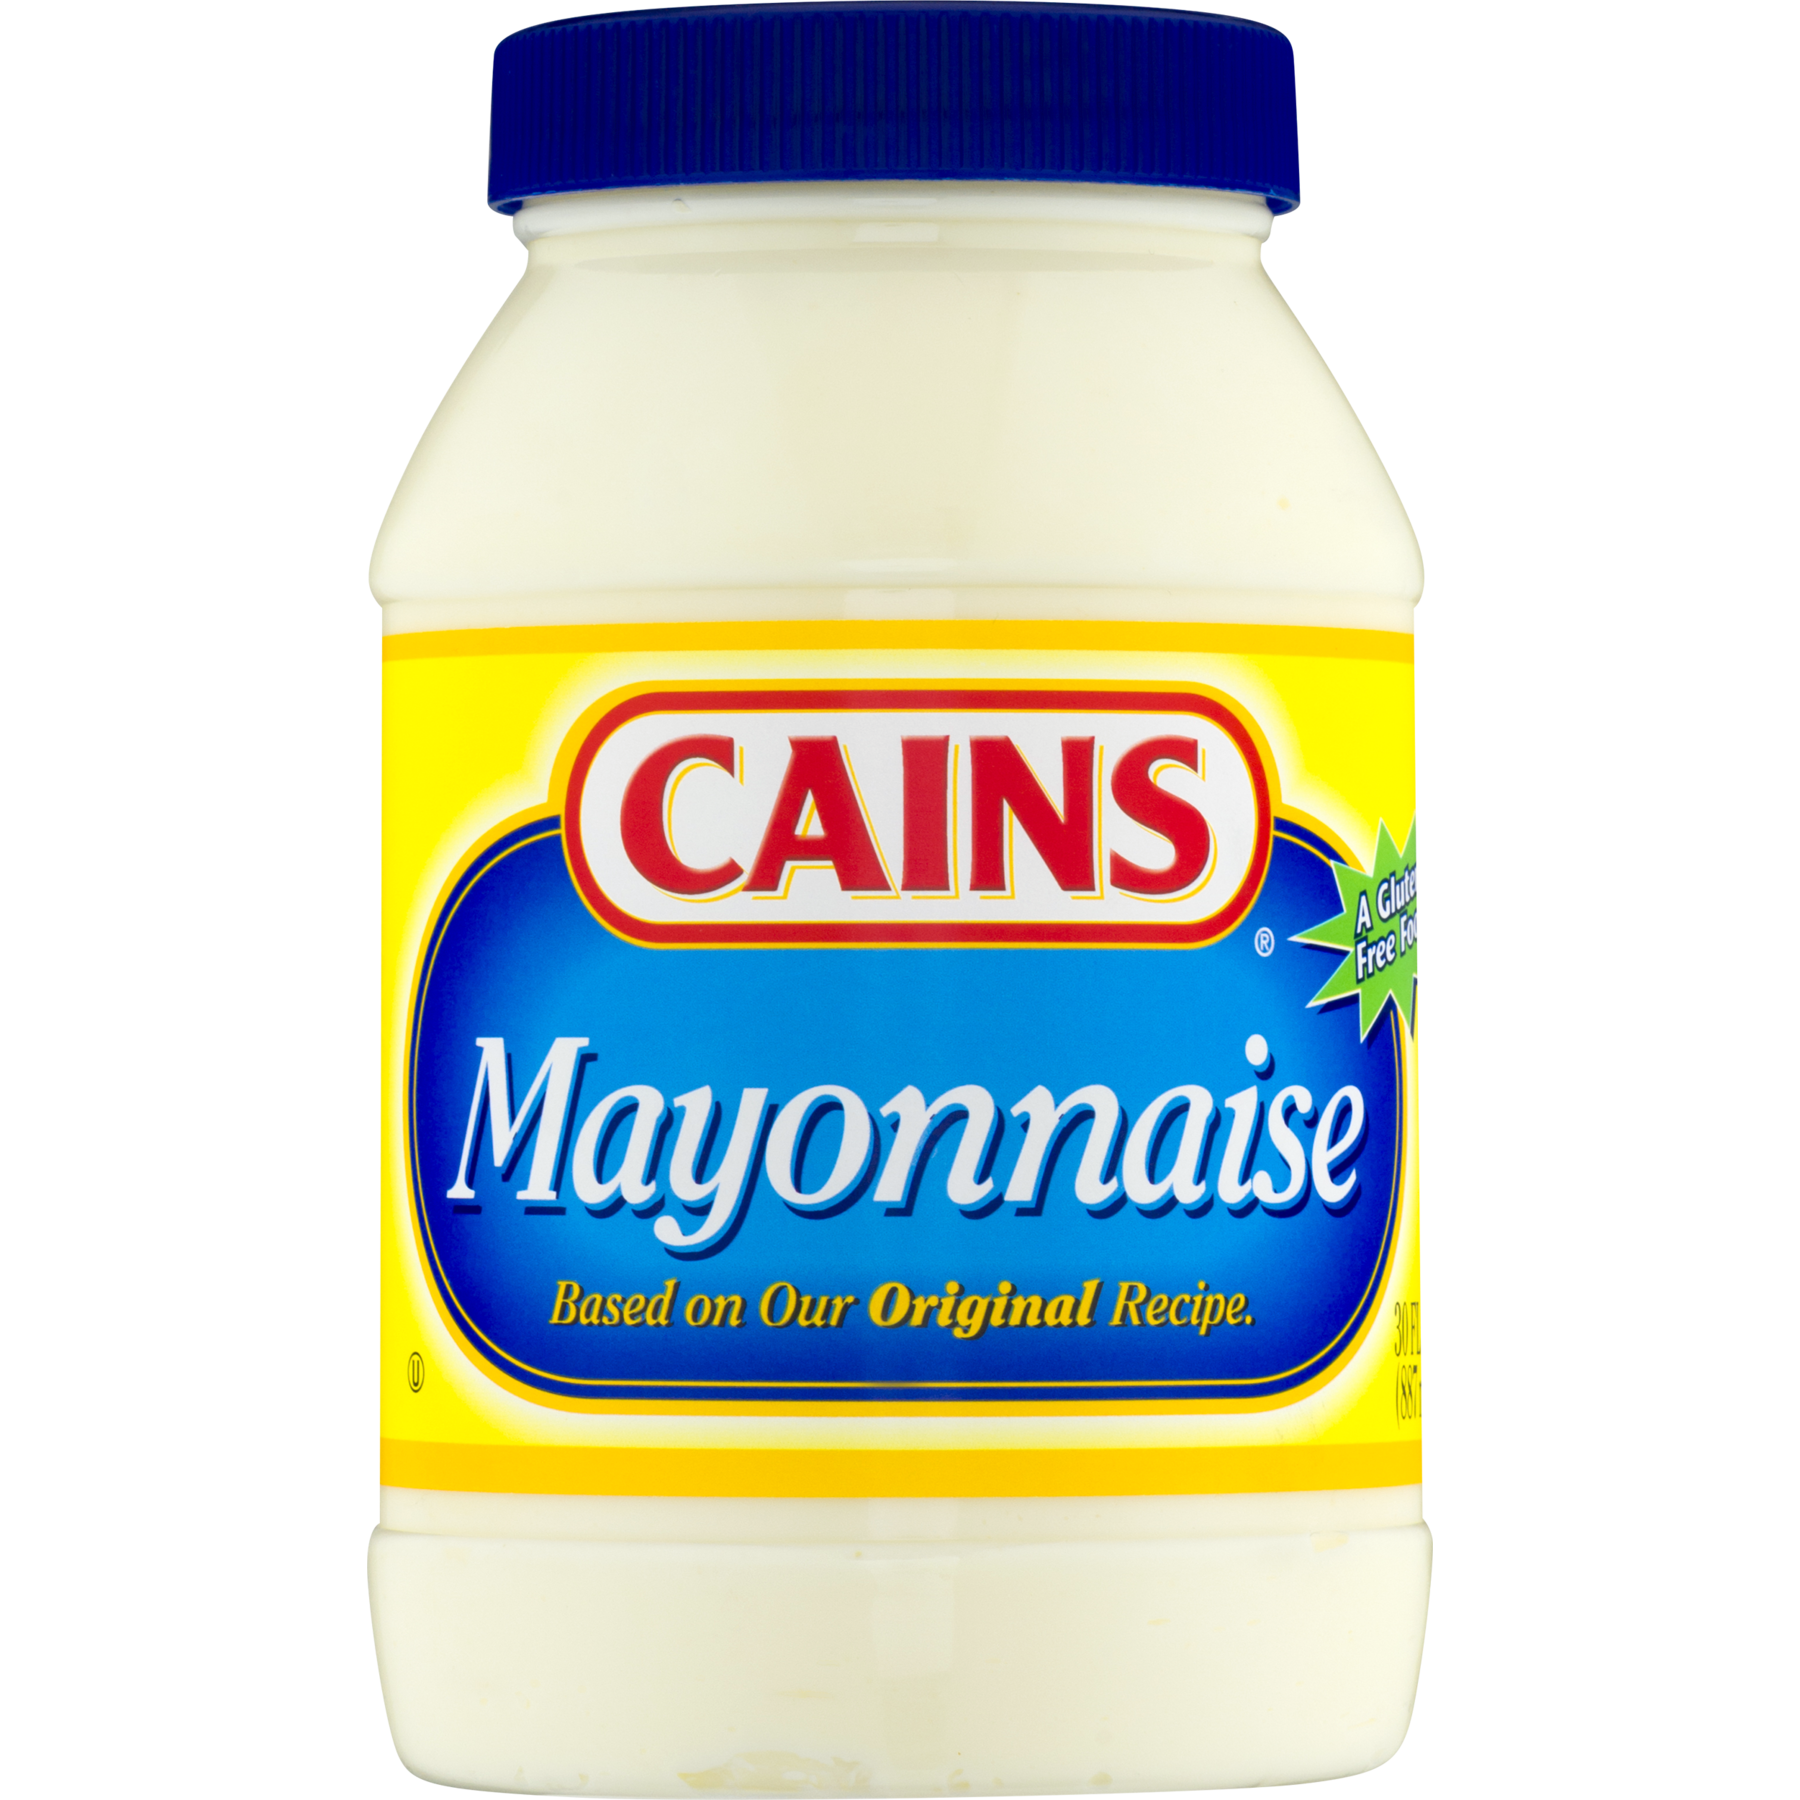 Mayonez